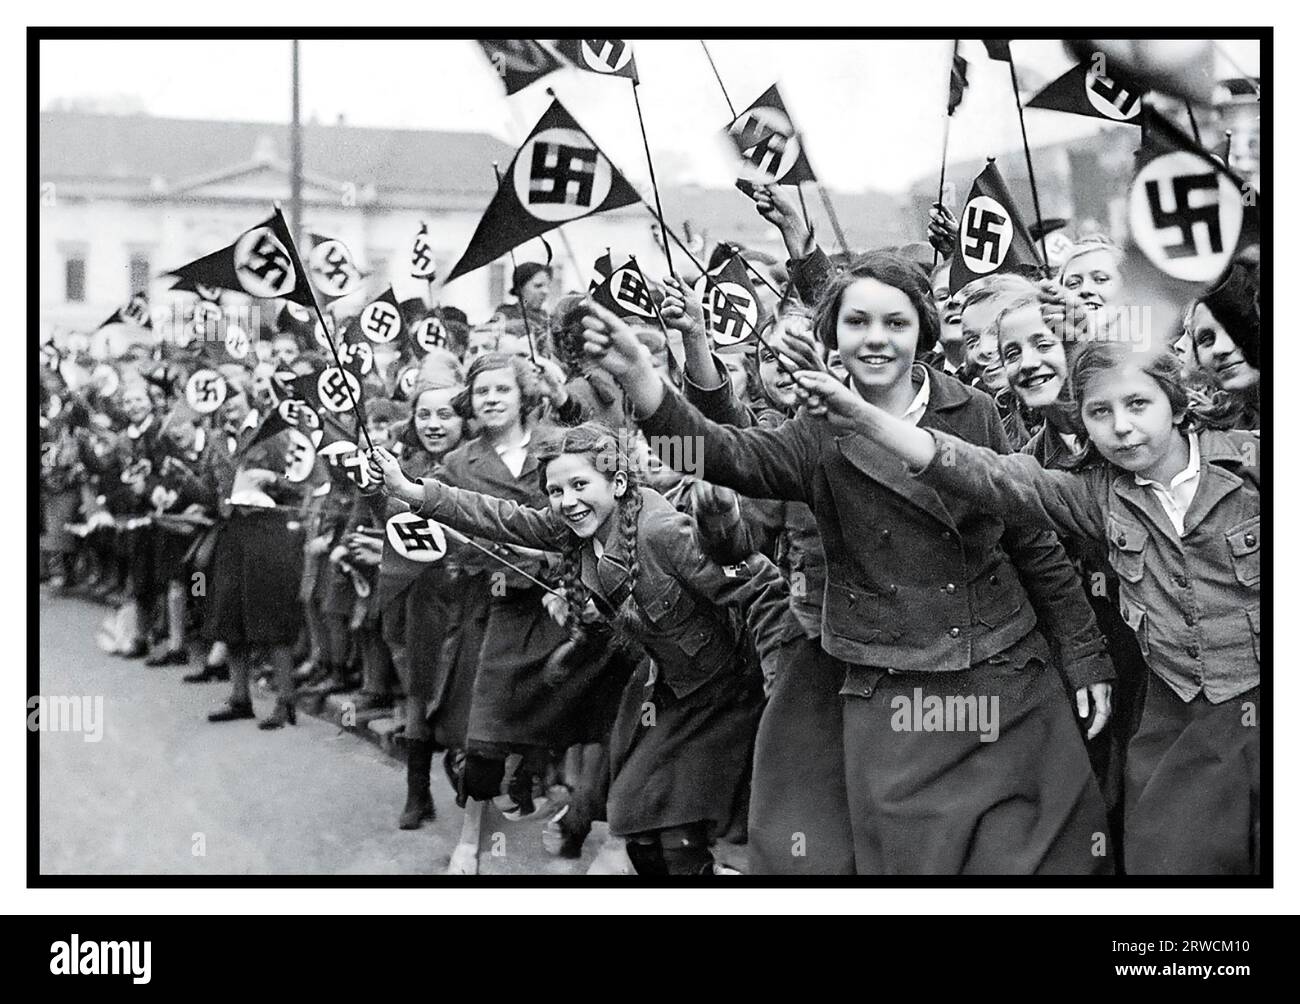 Der Deutsche Mädchenbund von Anschluss 1930 schwenkt Nazi-Hakenkreuz-Fahnen, um die deutsche Annexion Österreichs zu unterstützen und zu beglückwünschen. Wien, Österreich, März 1938. Am 14. März 1938 trat die Armee des NS-Führers Adolf Hitler in die Stadtgrenzen Wiens ein, um Austria Anschluss anzubauen Stockfoto